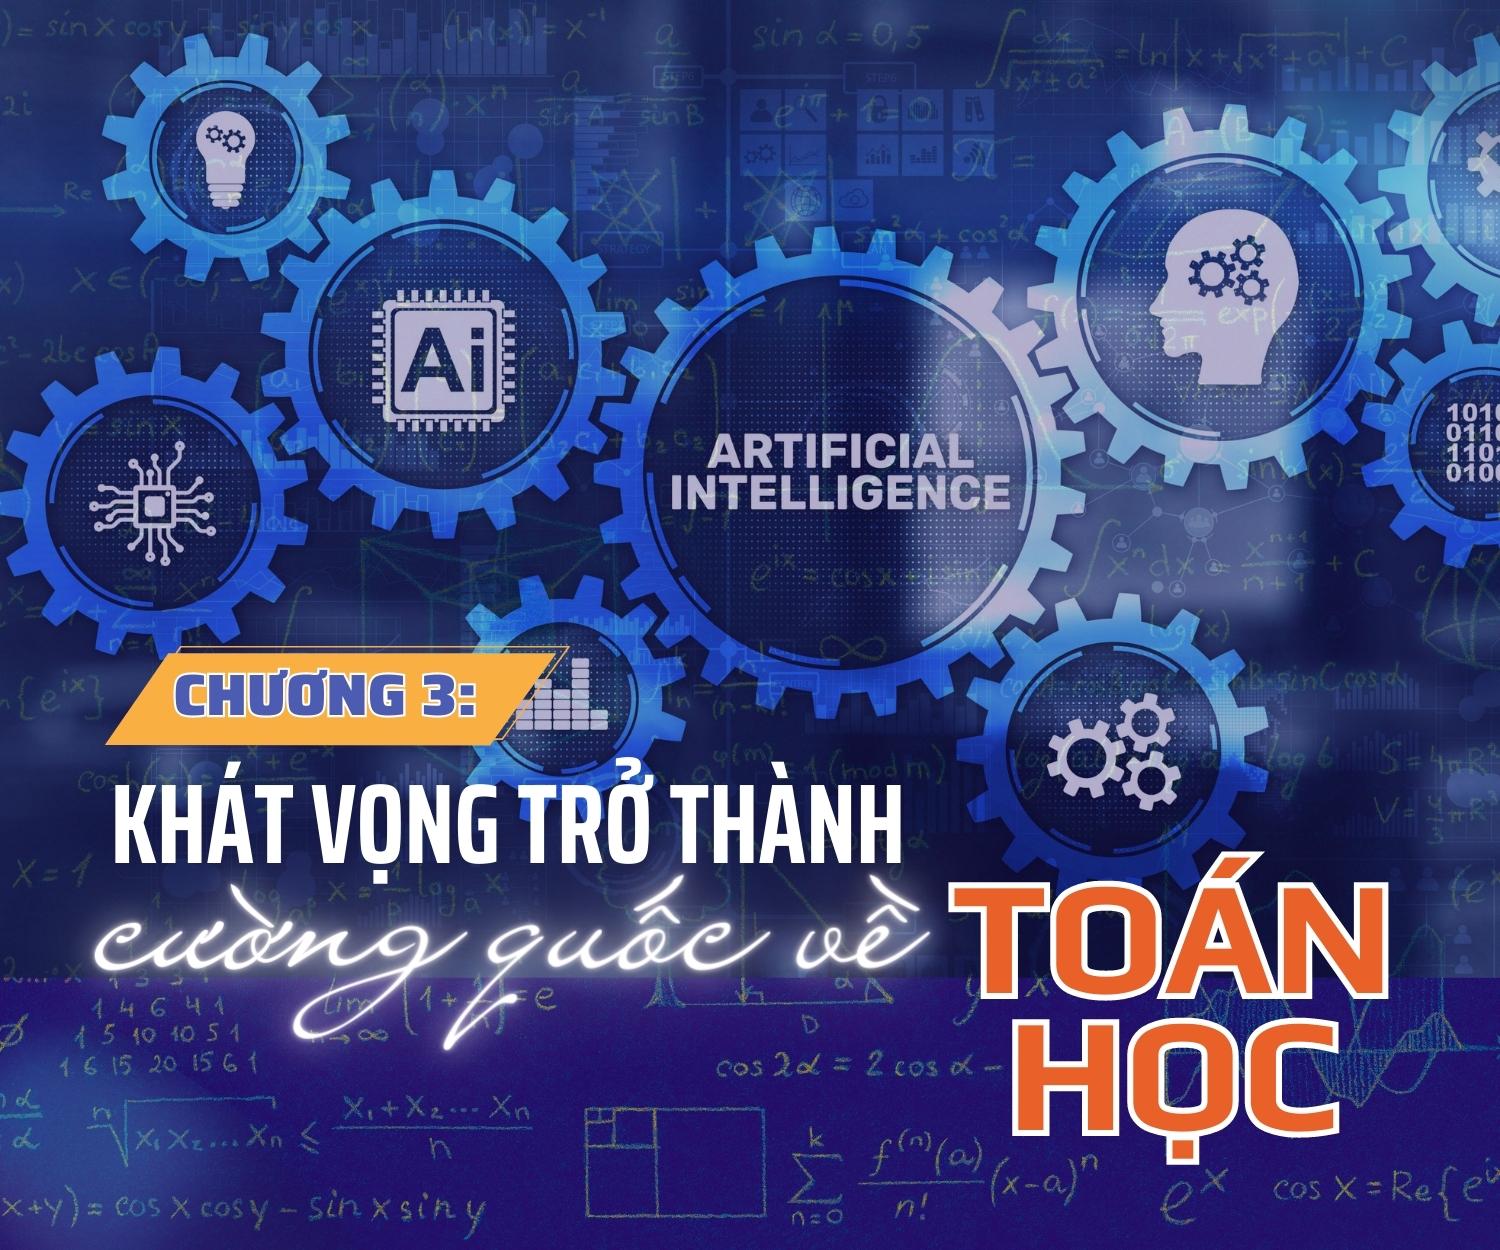 [Megastory] Toán học giúp Việt Nam bắt kịp xu thế thời đại - AI: Chương 3 - Khát vọng trở thành cường quốc về toán học